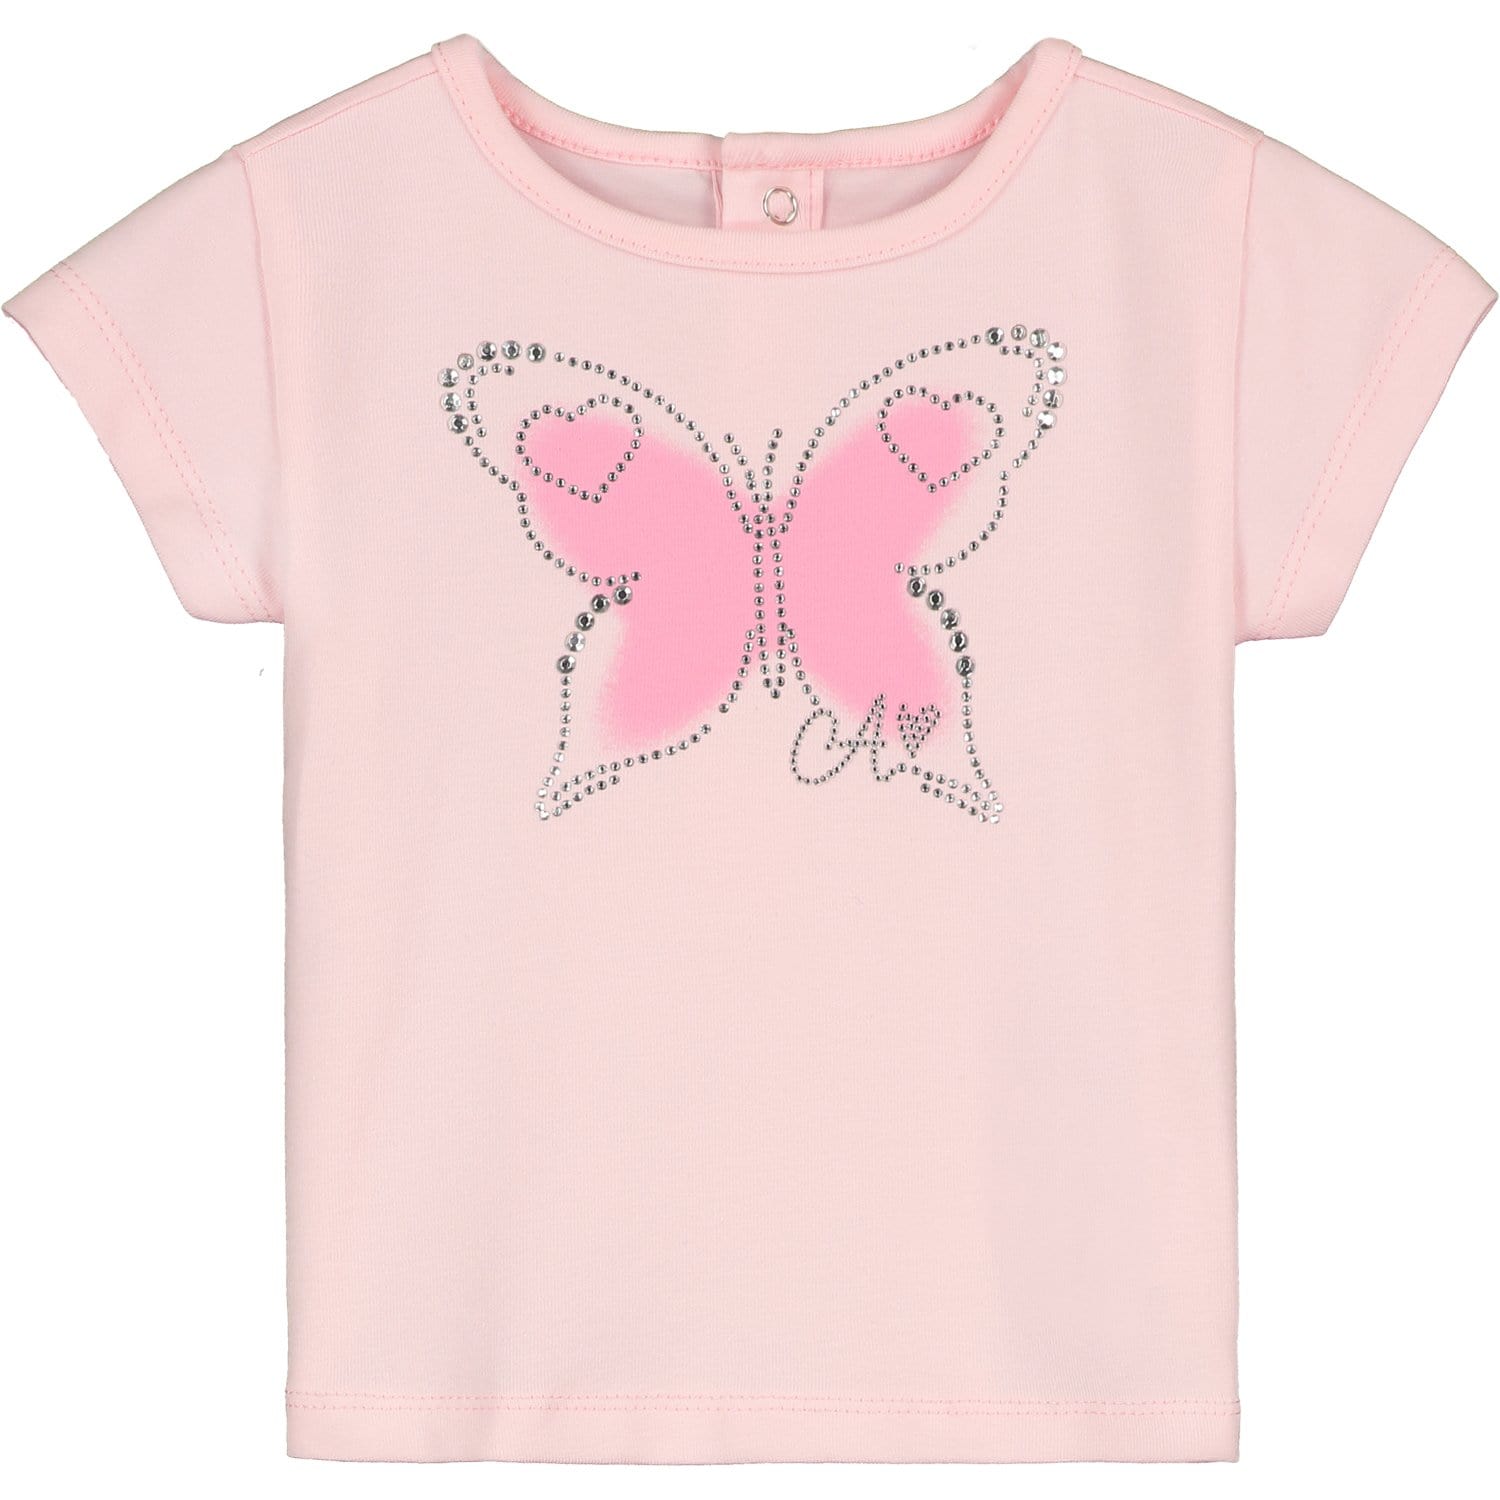 LITTLE A - Darla Butterfly Skirt Set - Pink